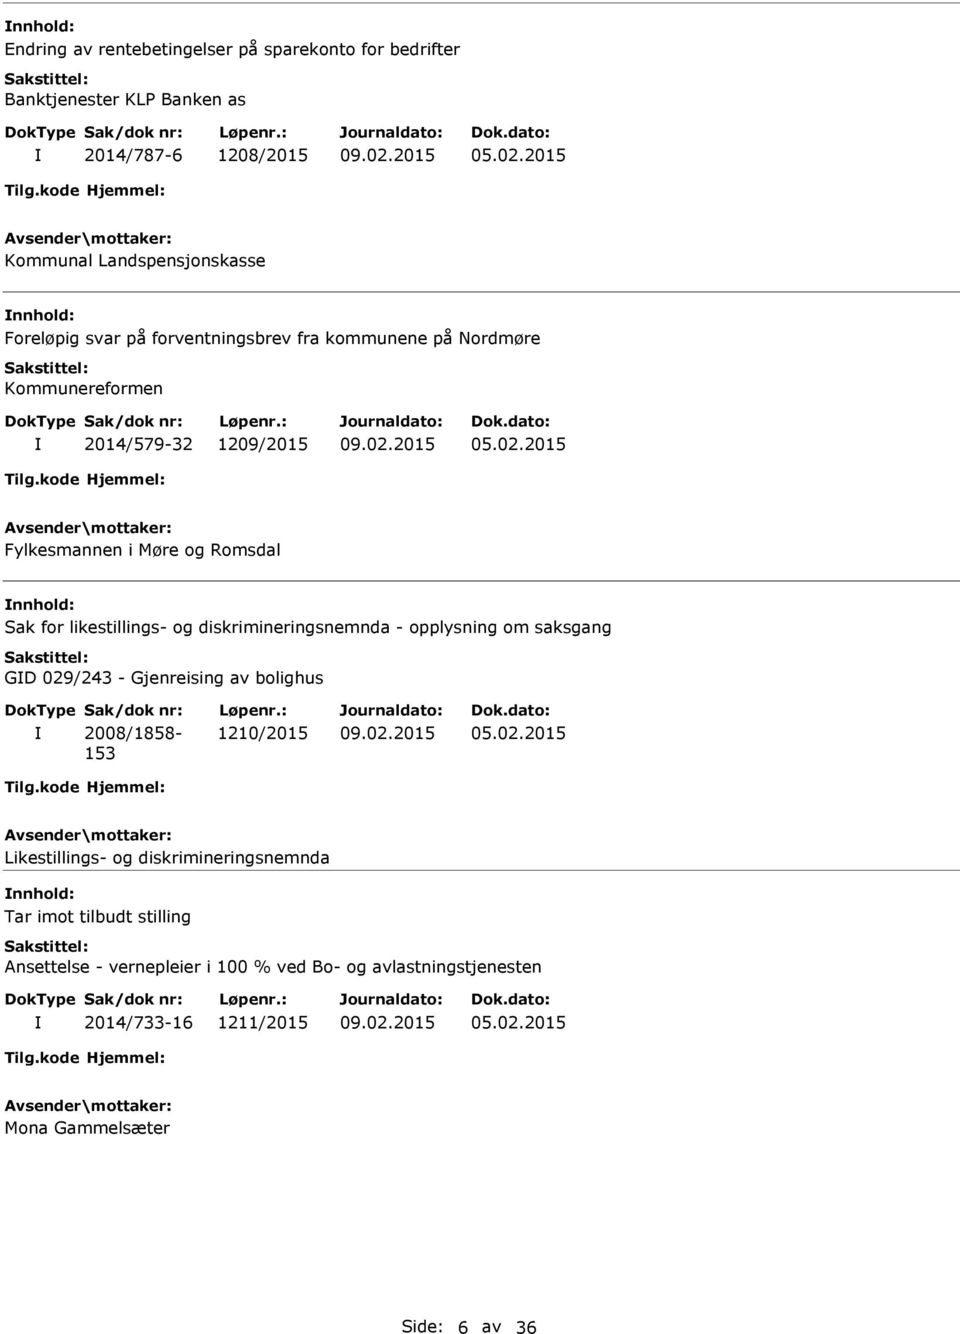 2015 Fylkesmannen i Møre og Romsdal Sak for likestillings- og diskrimineringsnemnda - opplysning om saksgang GD 029/243 - Gjenreising av bolighus